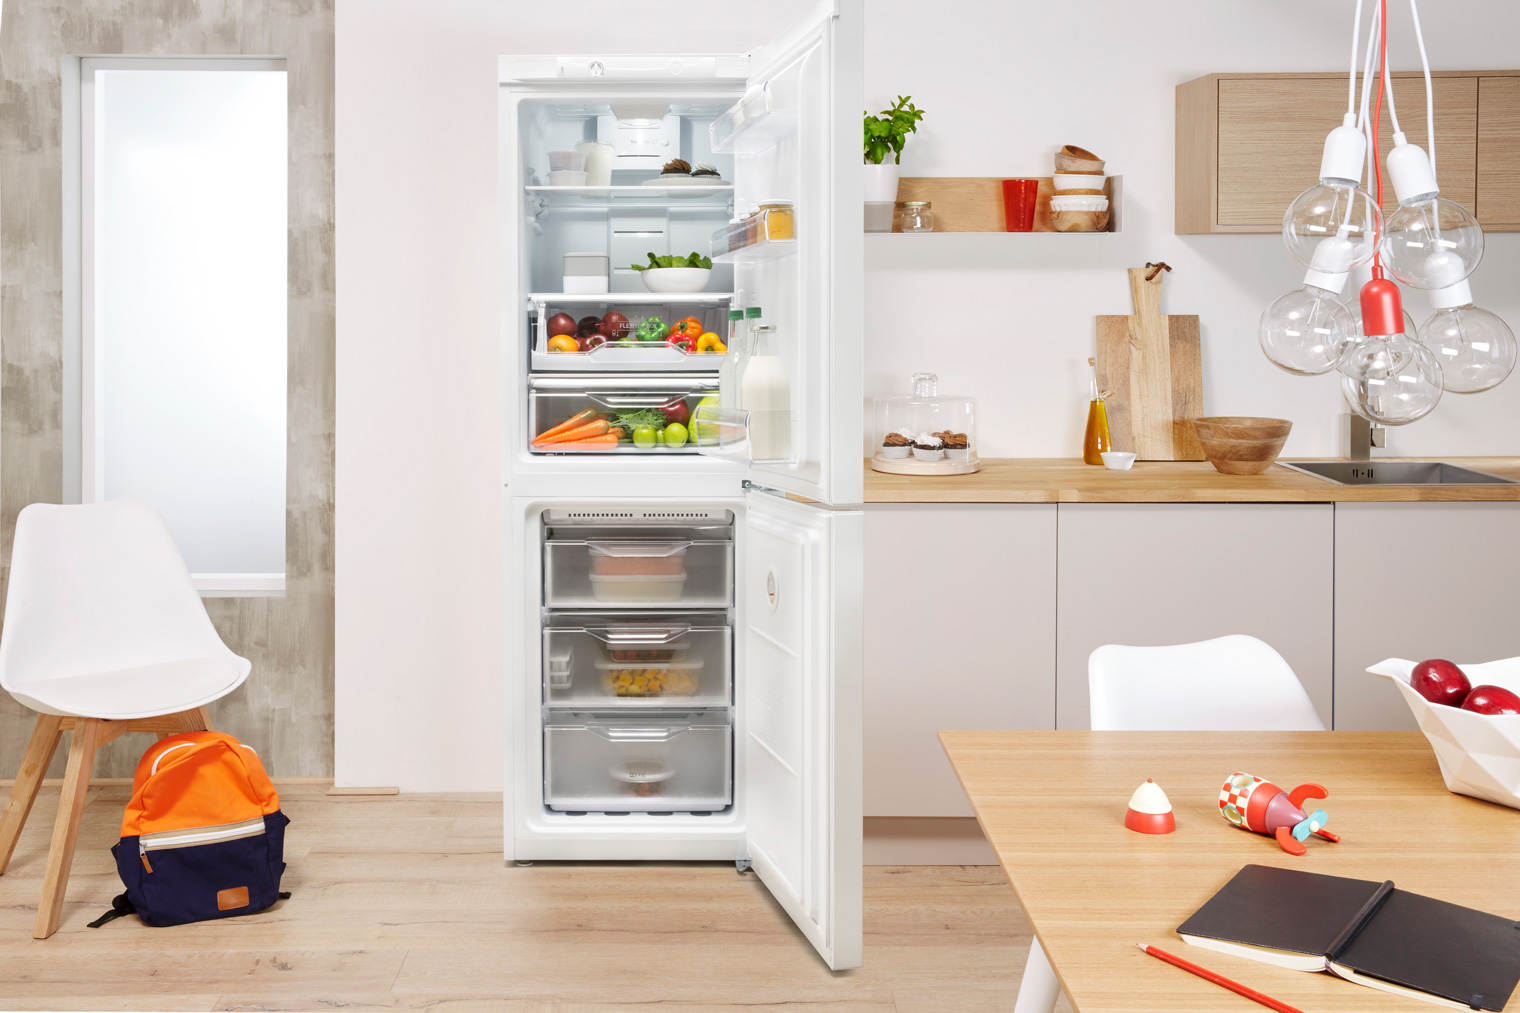 Двухкамерный холодильник INDESIT LI8 S1 W + кредит 0% на 10 мес или сертификат на 100 грн в подарок + бесплатная доставка!